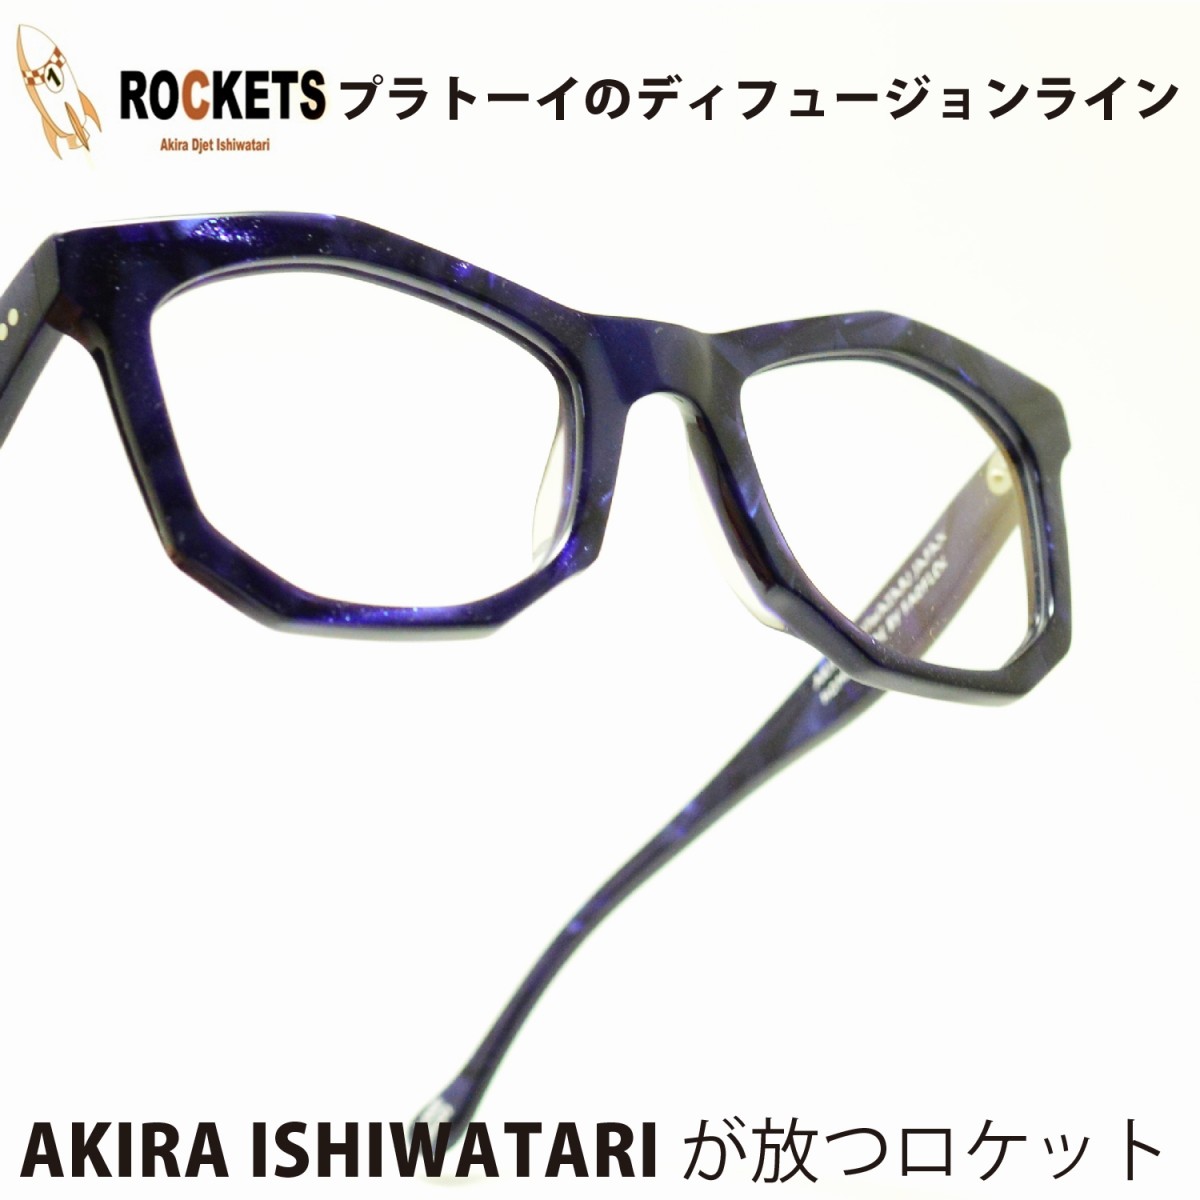 楽天市場 Rockets Utsuke Col Lakeメガネ 眼鏡 めがね メンズ レディース おしゃれ ブランド 人気 おすすめ フレーム 流行り 度付き レンズ デコリンメガネ